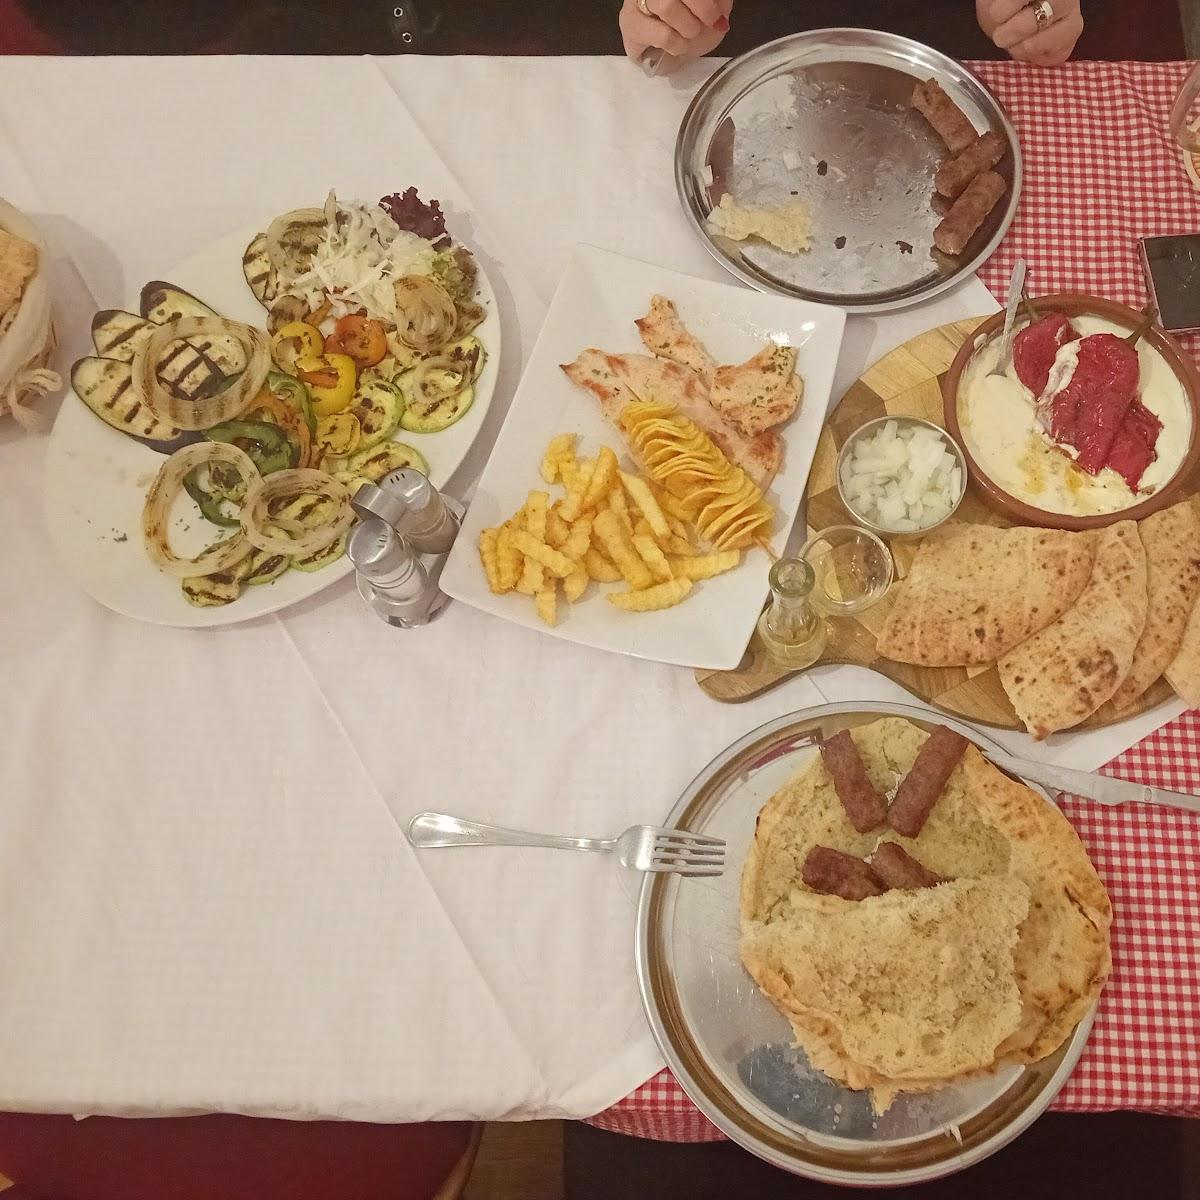 Restaurant "Balkanrestaurant PiK" in Ehingen (Donau)